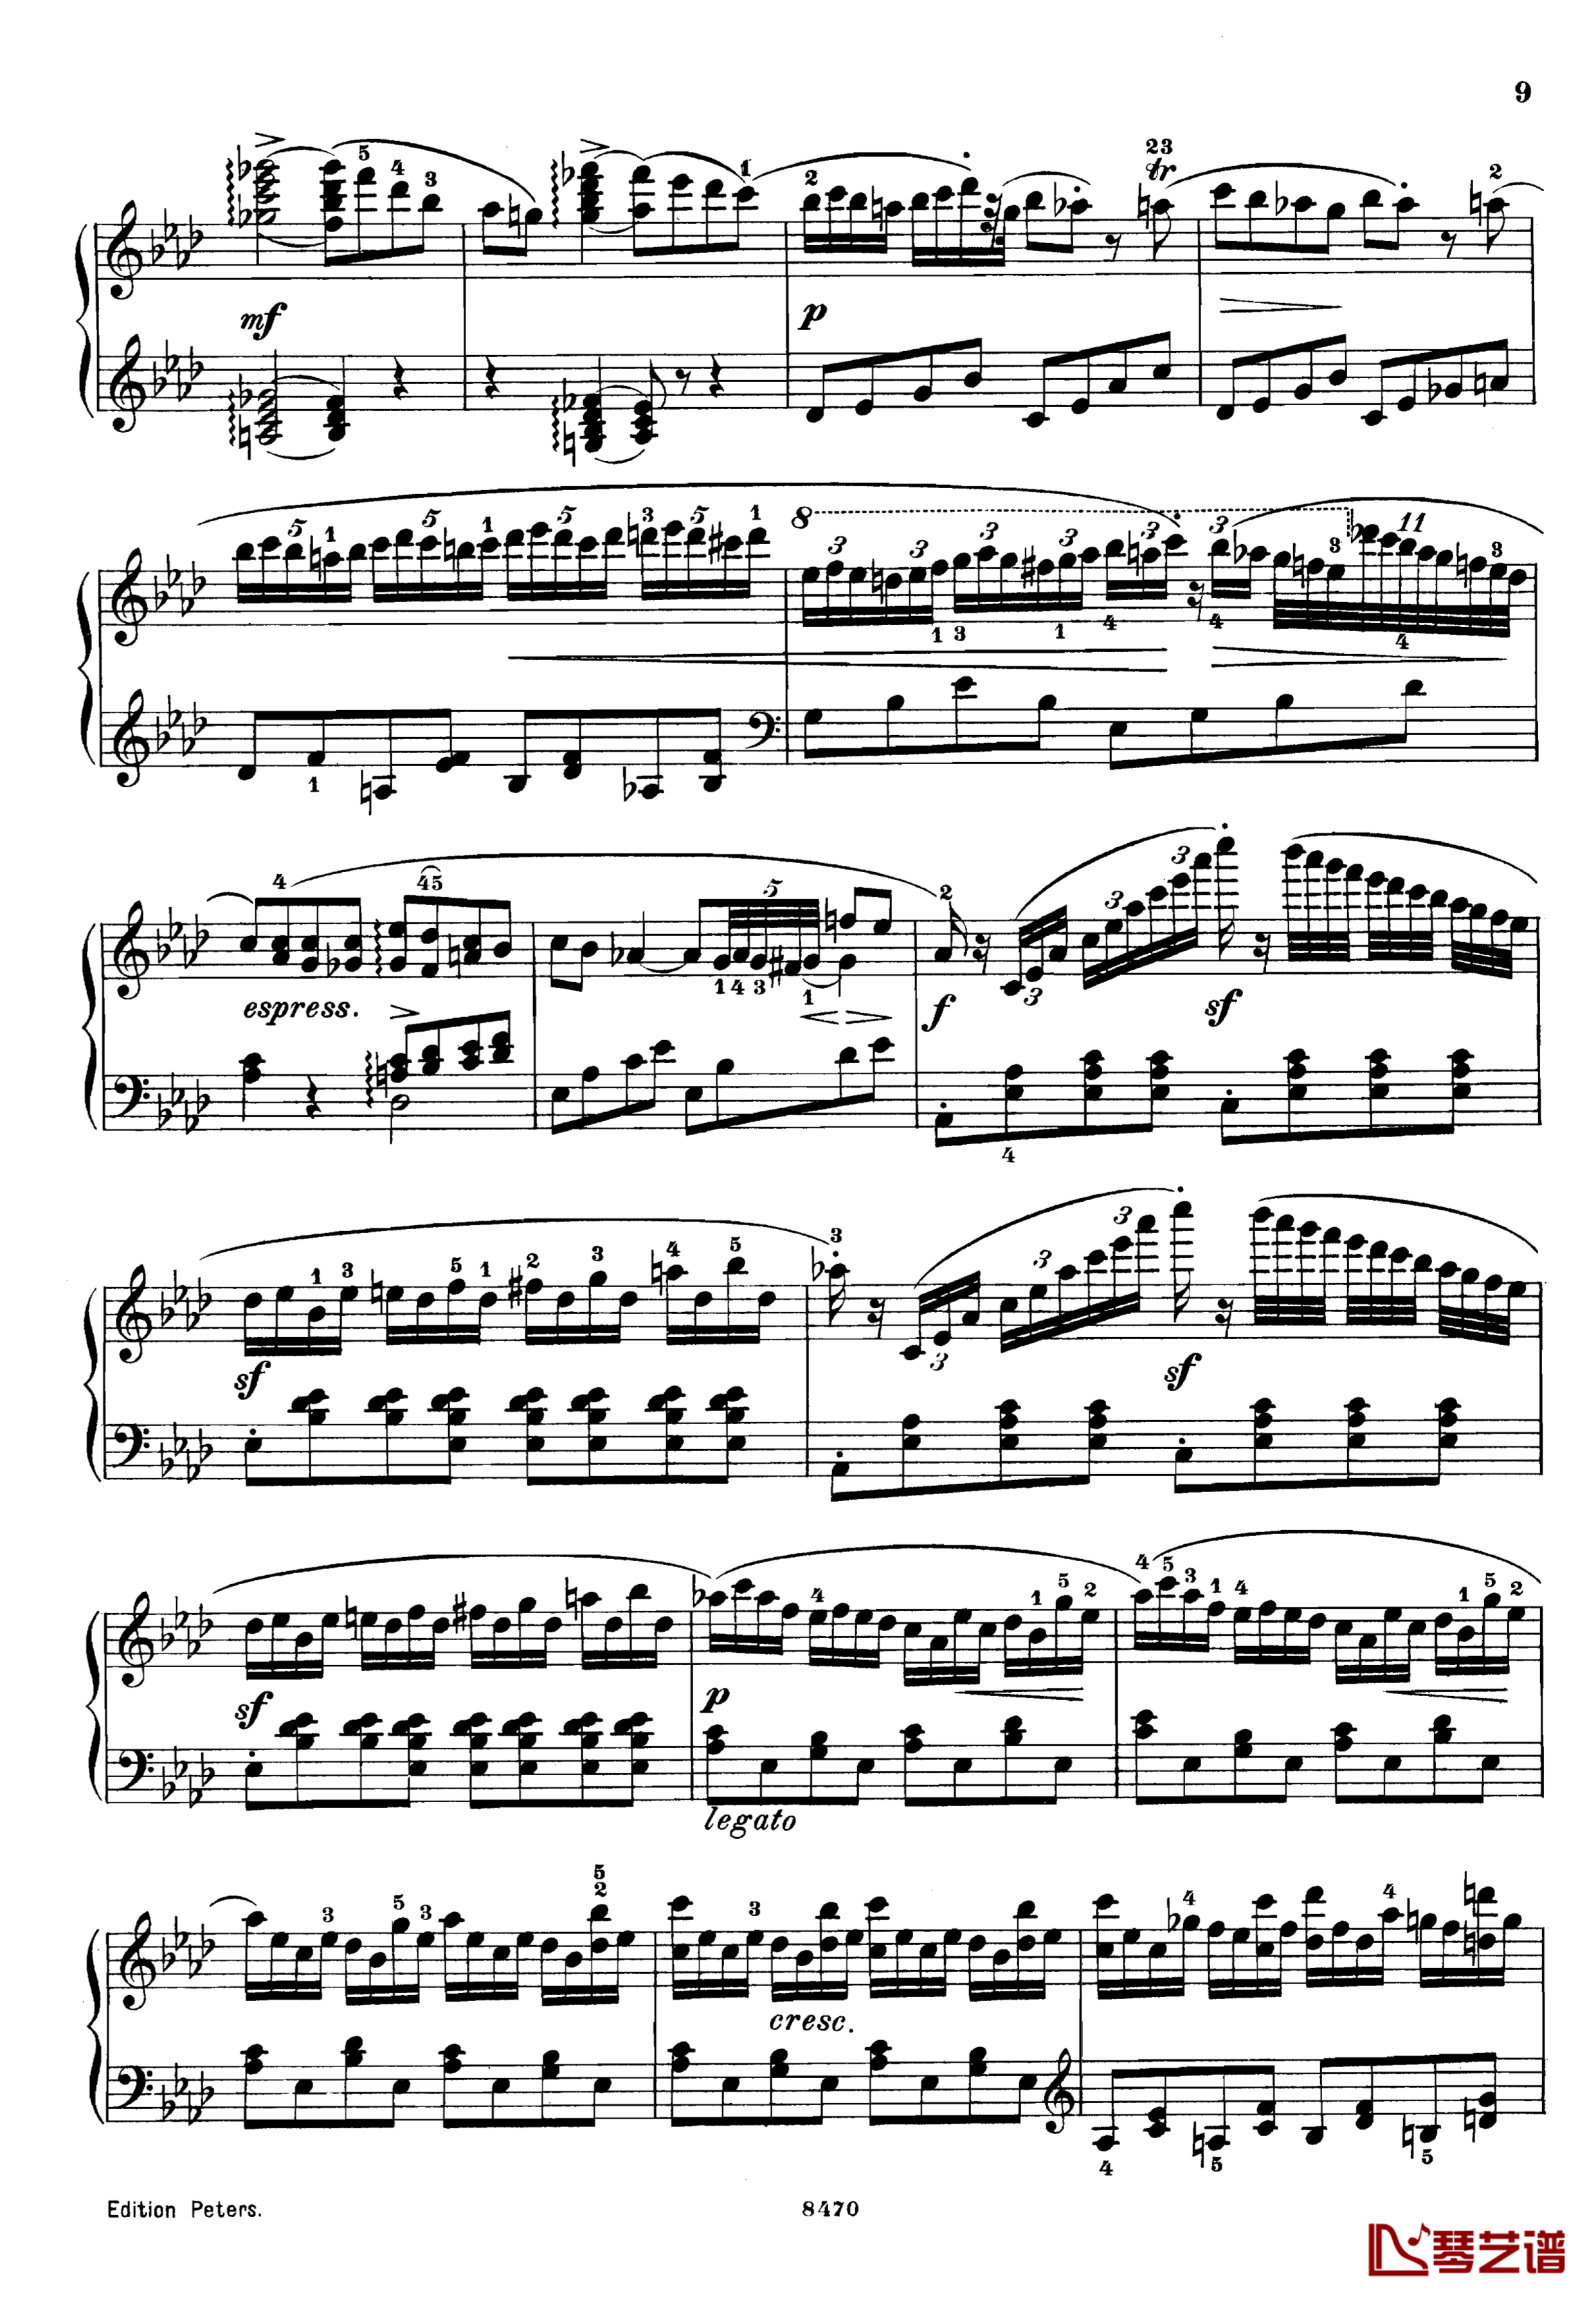 升c小调第三钢琴协奏曲Op.55钢琴谱-克里斯蒂安-里斯9